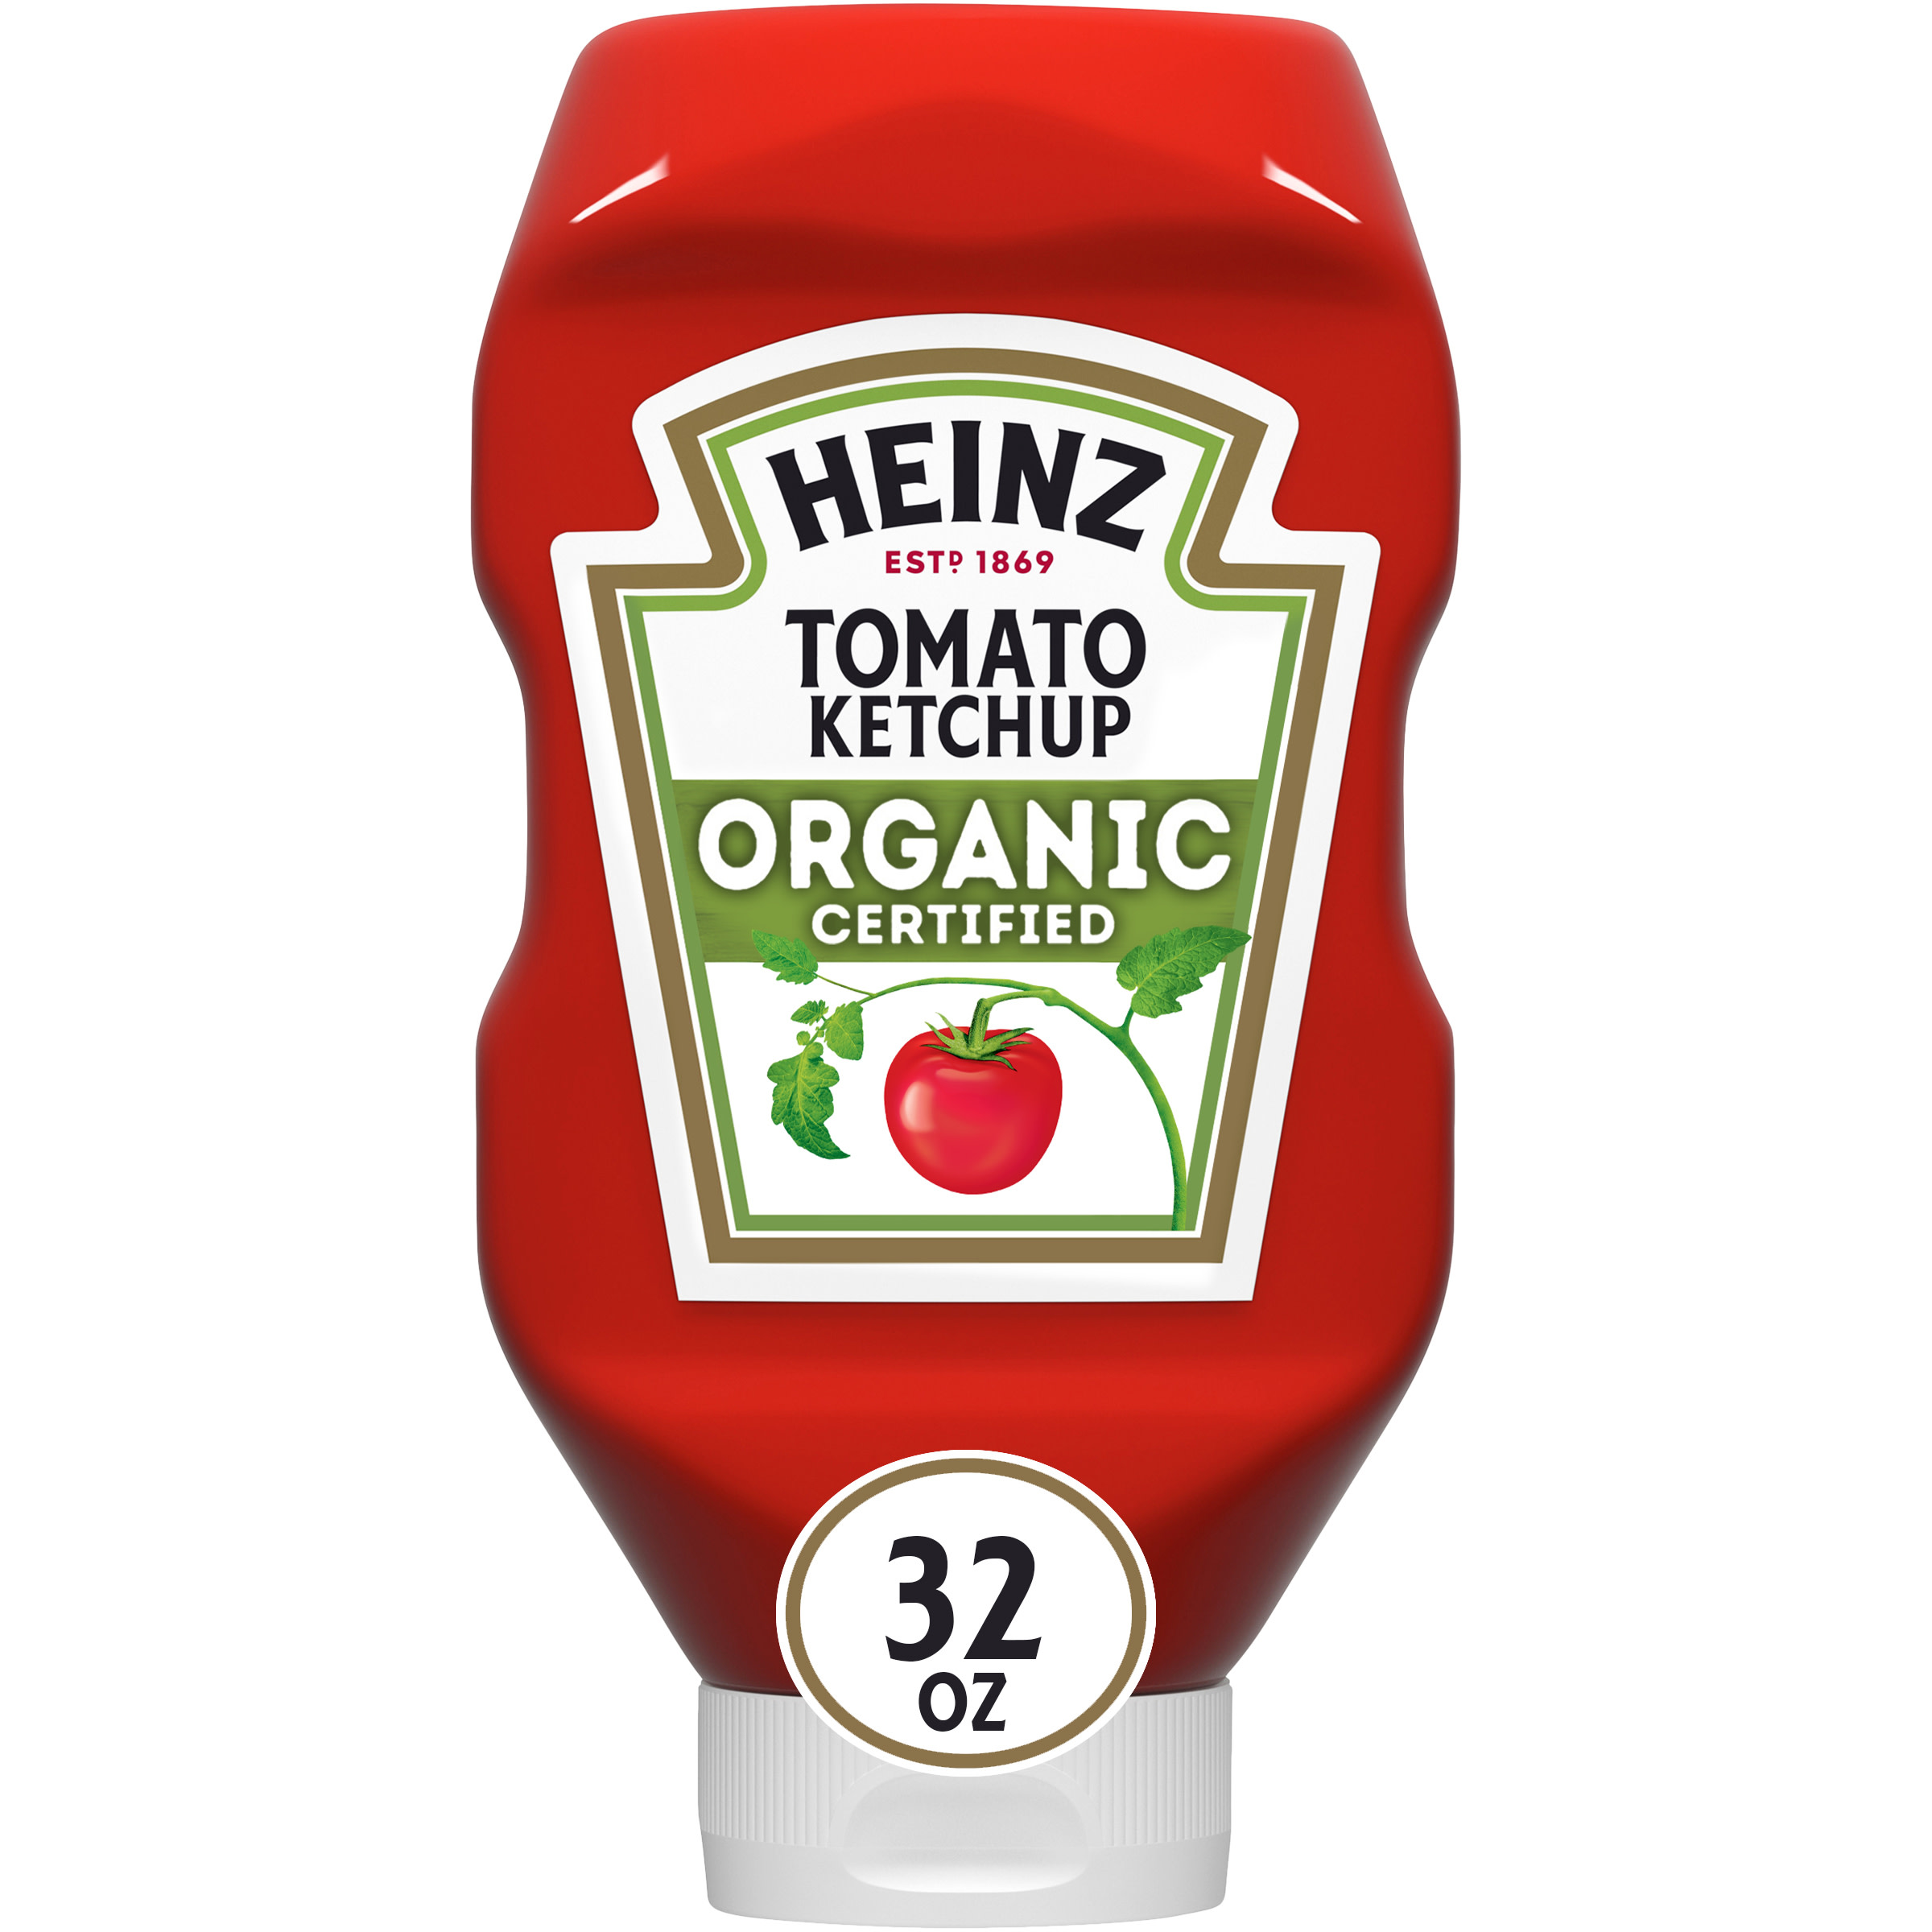 Buy Heinz Organic Tomato Ketchup, 32 oz Bottle Online in Belgium. 45612361